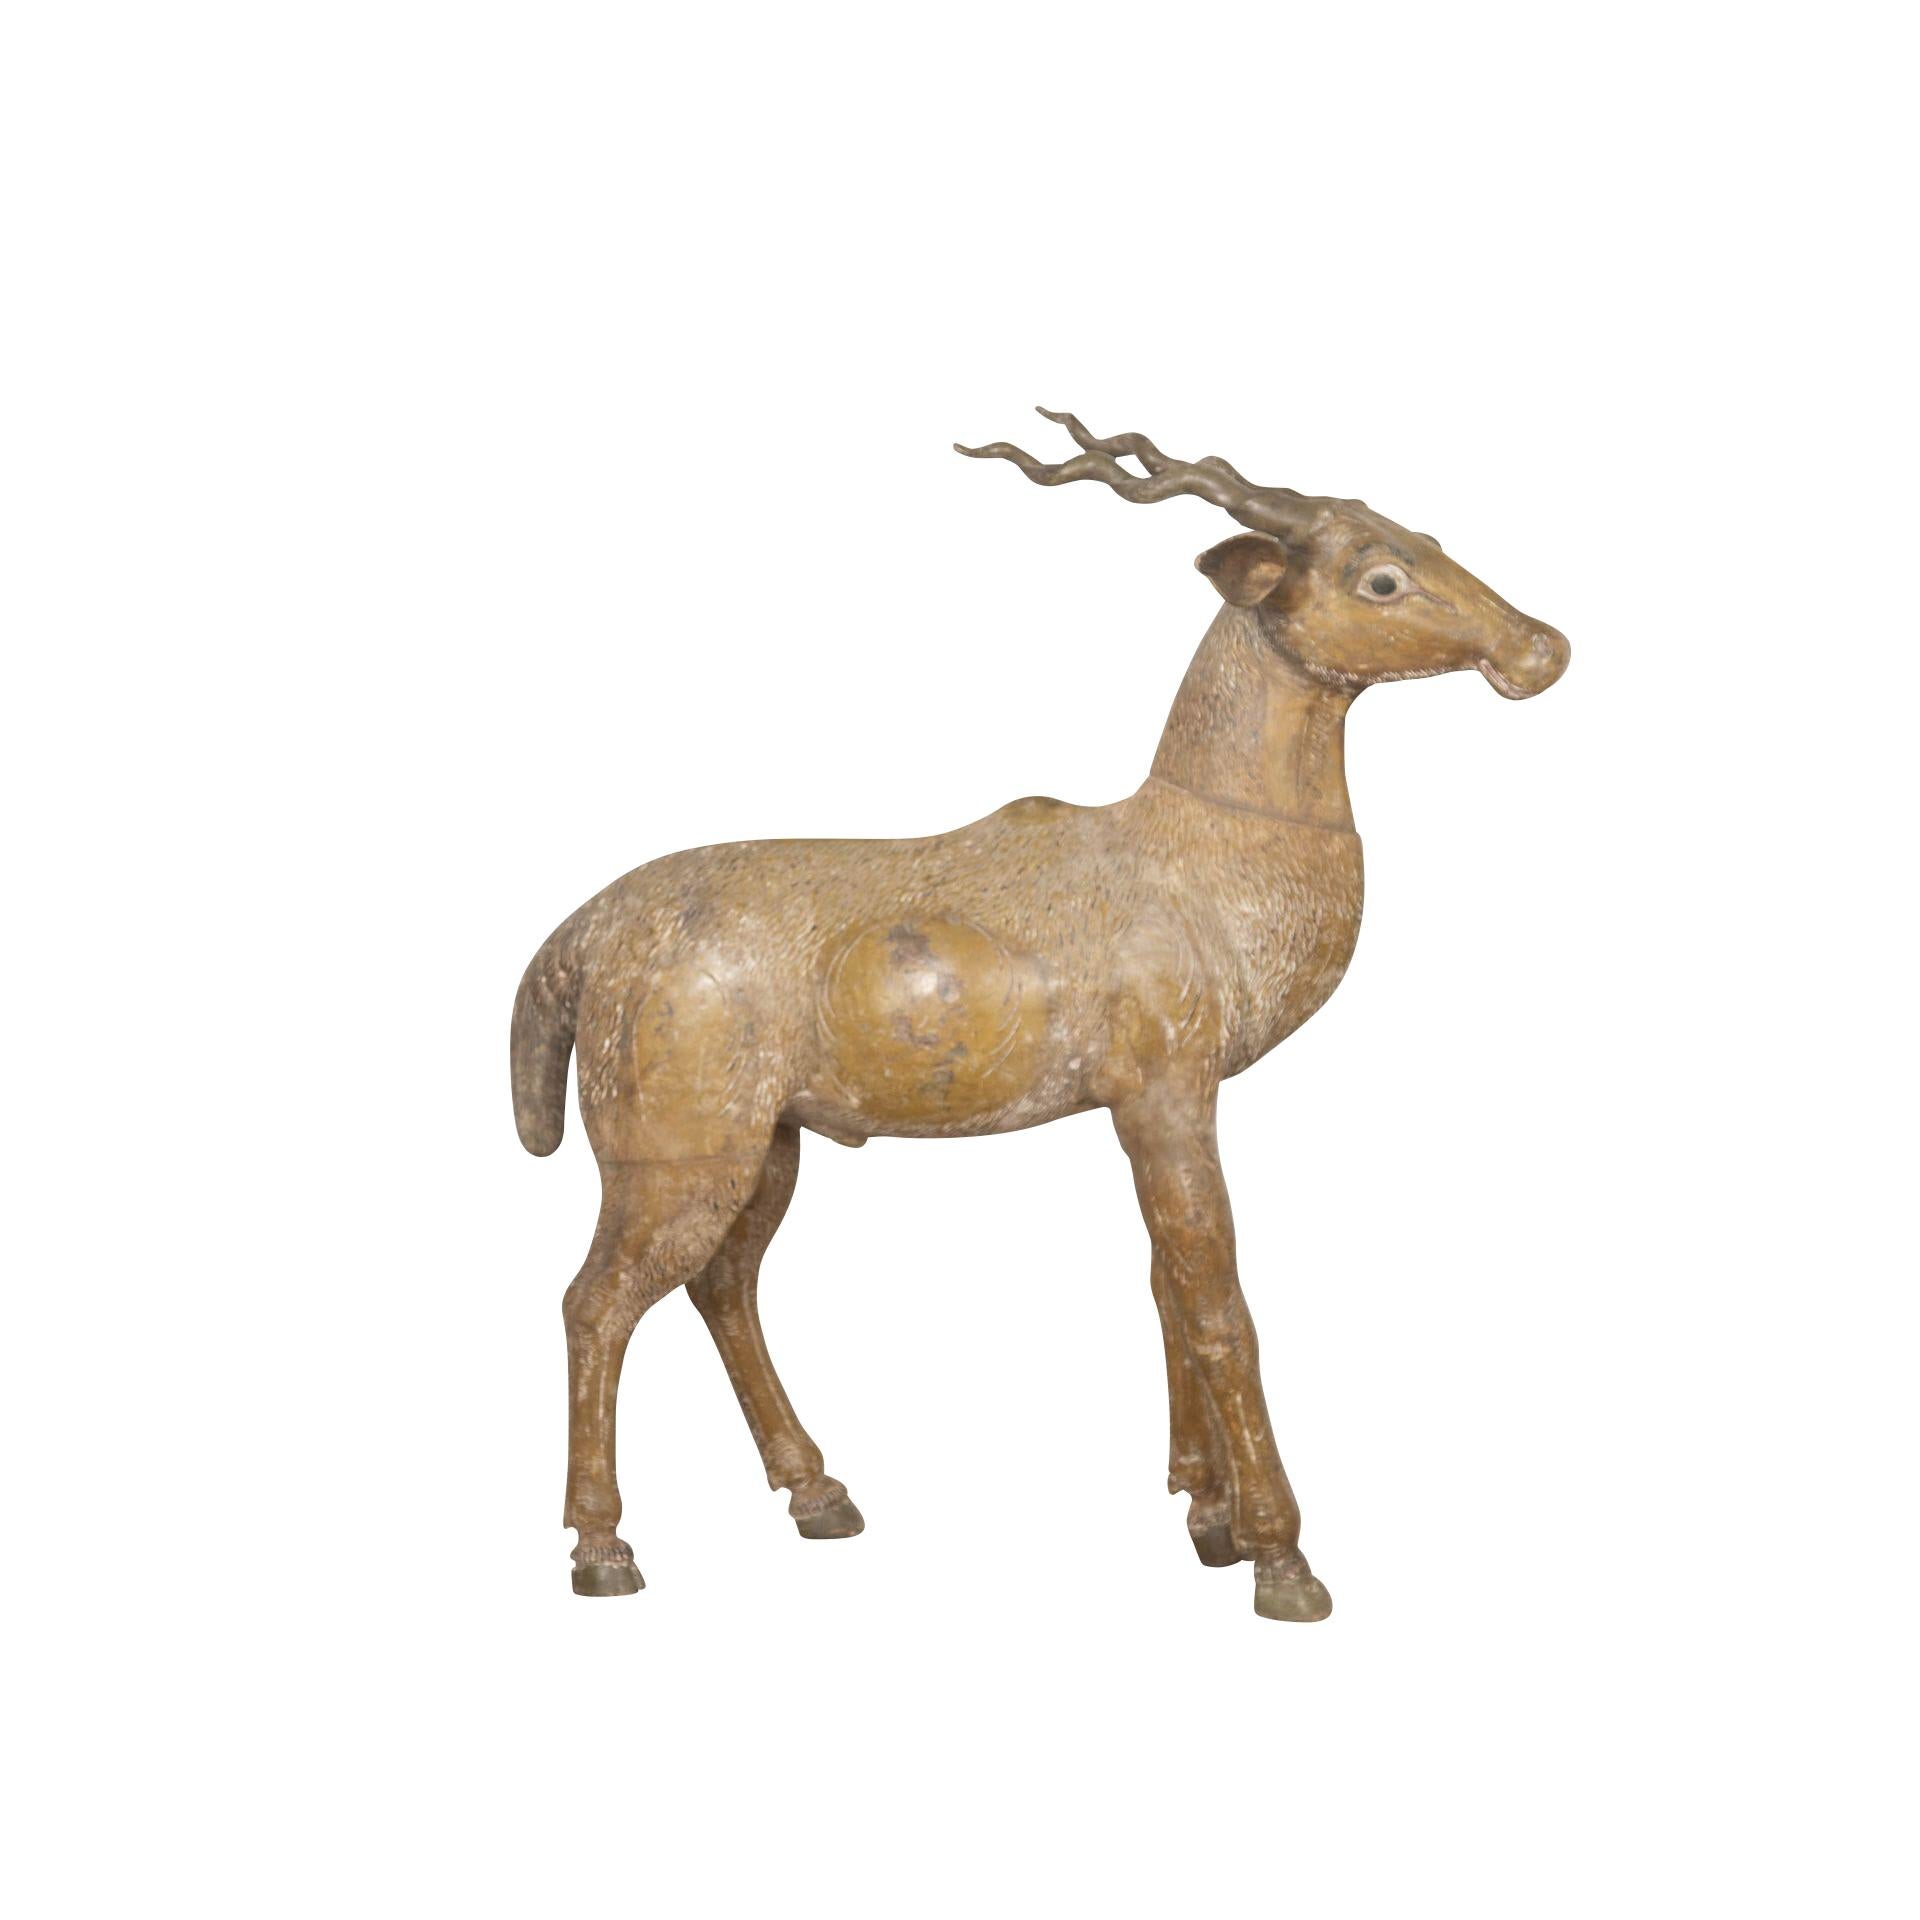  Une antilope inhabituelle de la fin du XIXe siècle, sculptée dans du bois, avec une expression naïve sur son visage et dans une position écartée, finie dans sa décoration originale aux couleurs vives. Circa 1880.

H : 91 cm (35 13/16